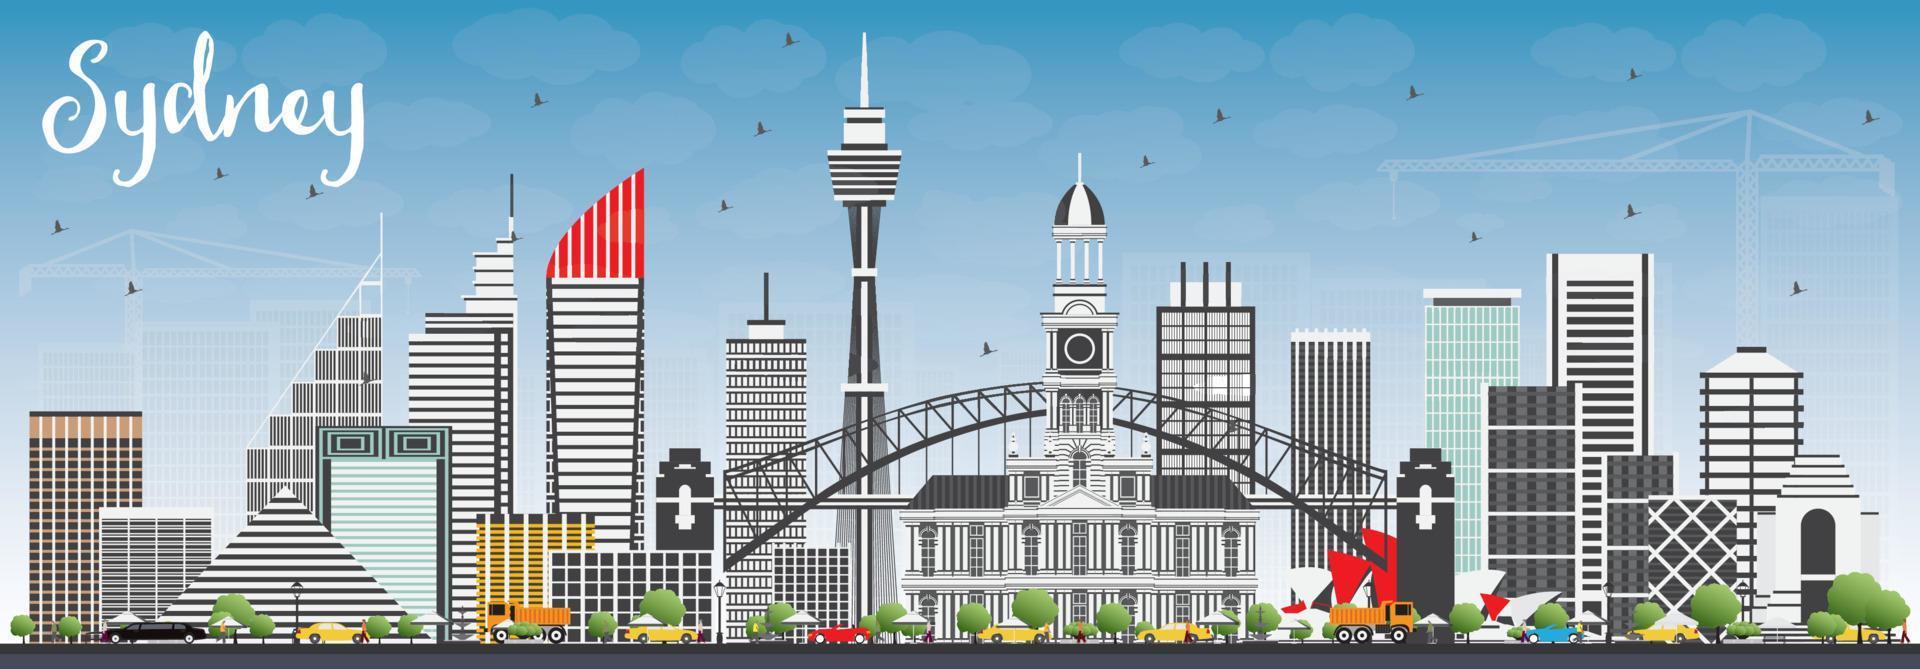 Sydney Australia Skyline with Gray Buildings and Blue Sky. vector